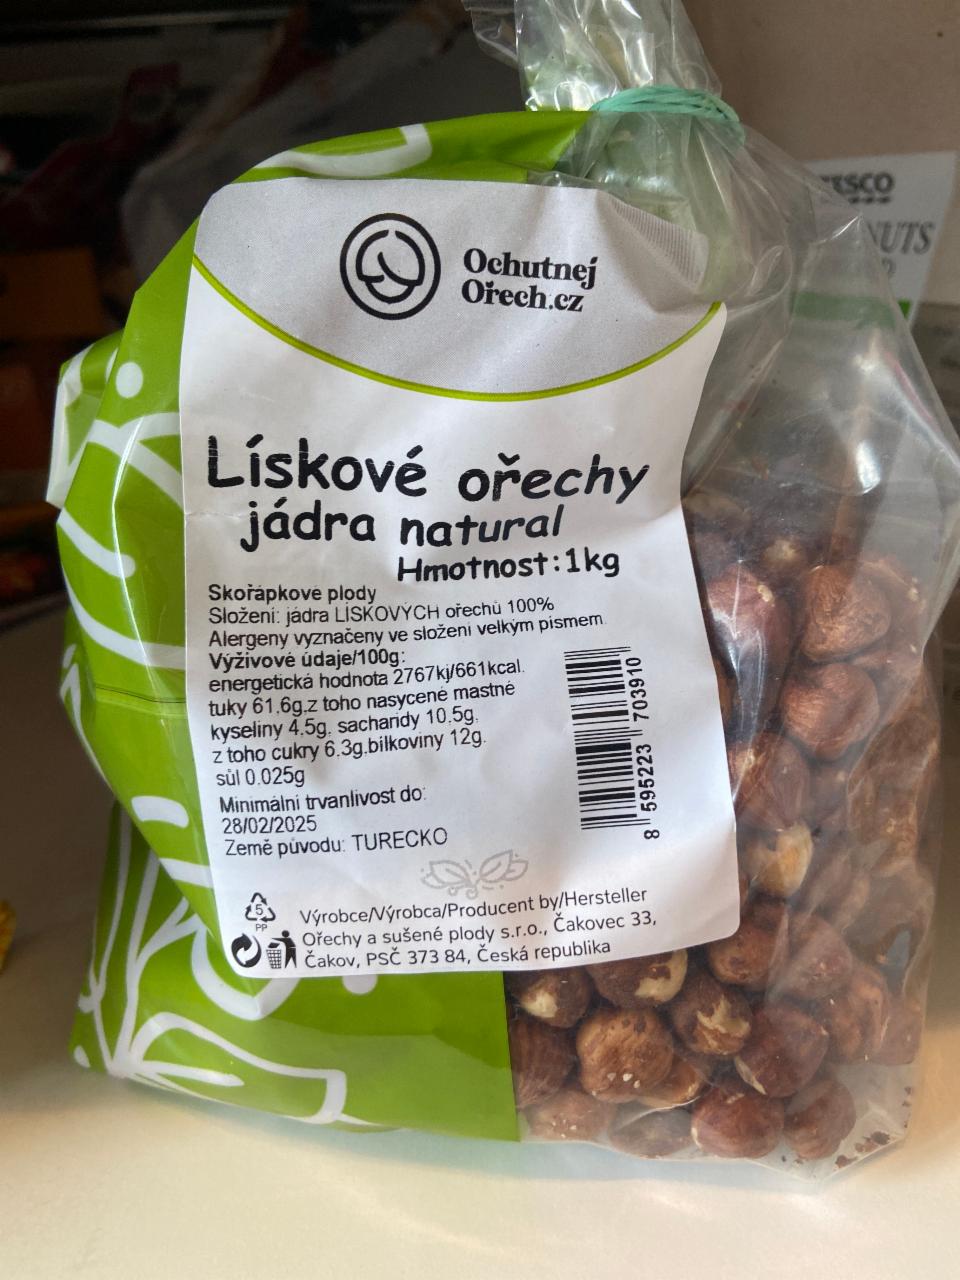 Fotografie - Lískové ořechy jádra natural Ochutnejorech.cz